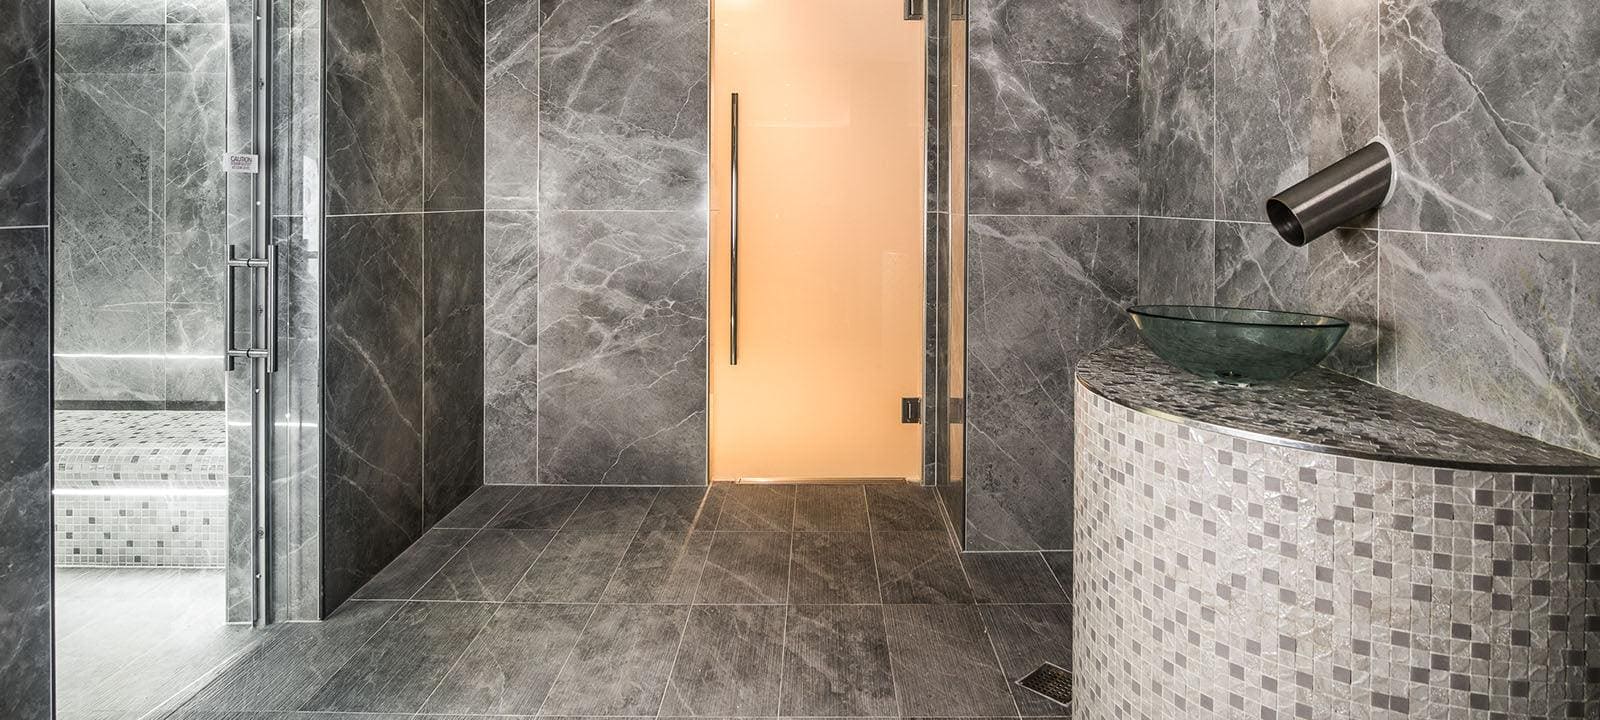 Minoli Wall & Floor Tiles Marvel Grey Fleury